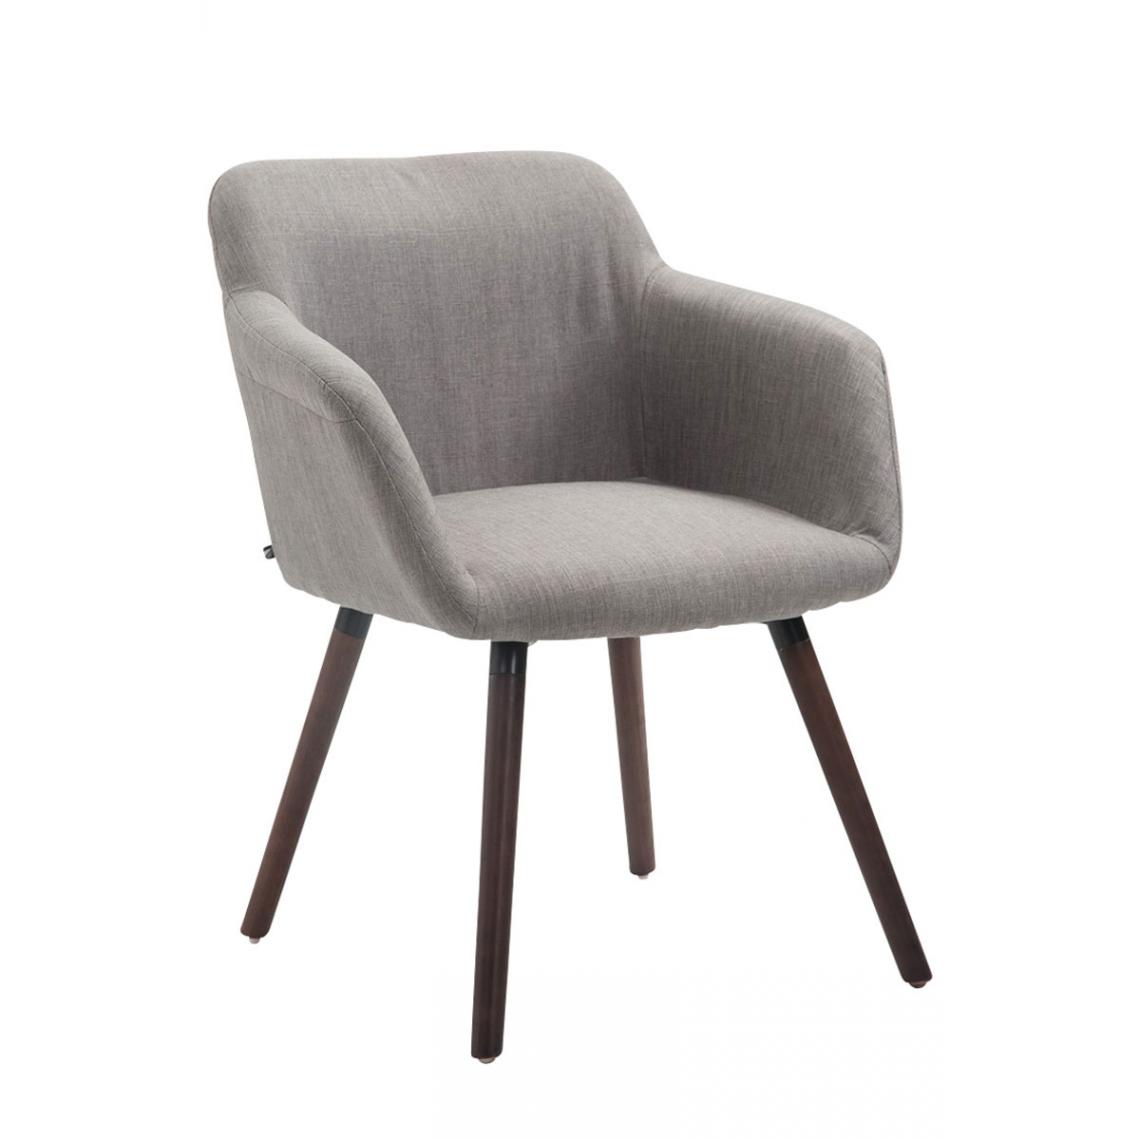 Icaverne - Moderne Chaise de salle à manger gamme Tunis tissu noyer couleur gris - Chaises